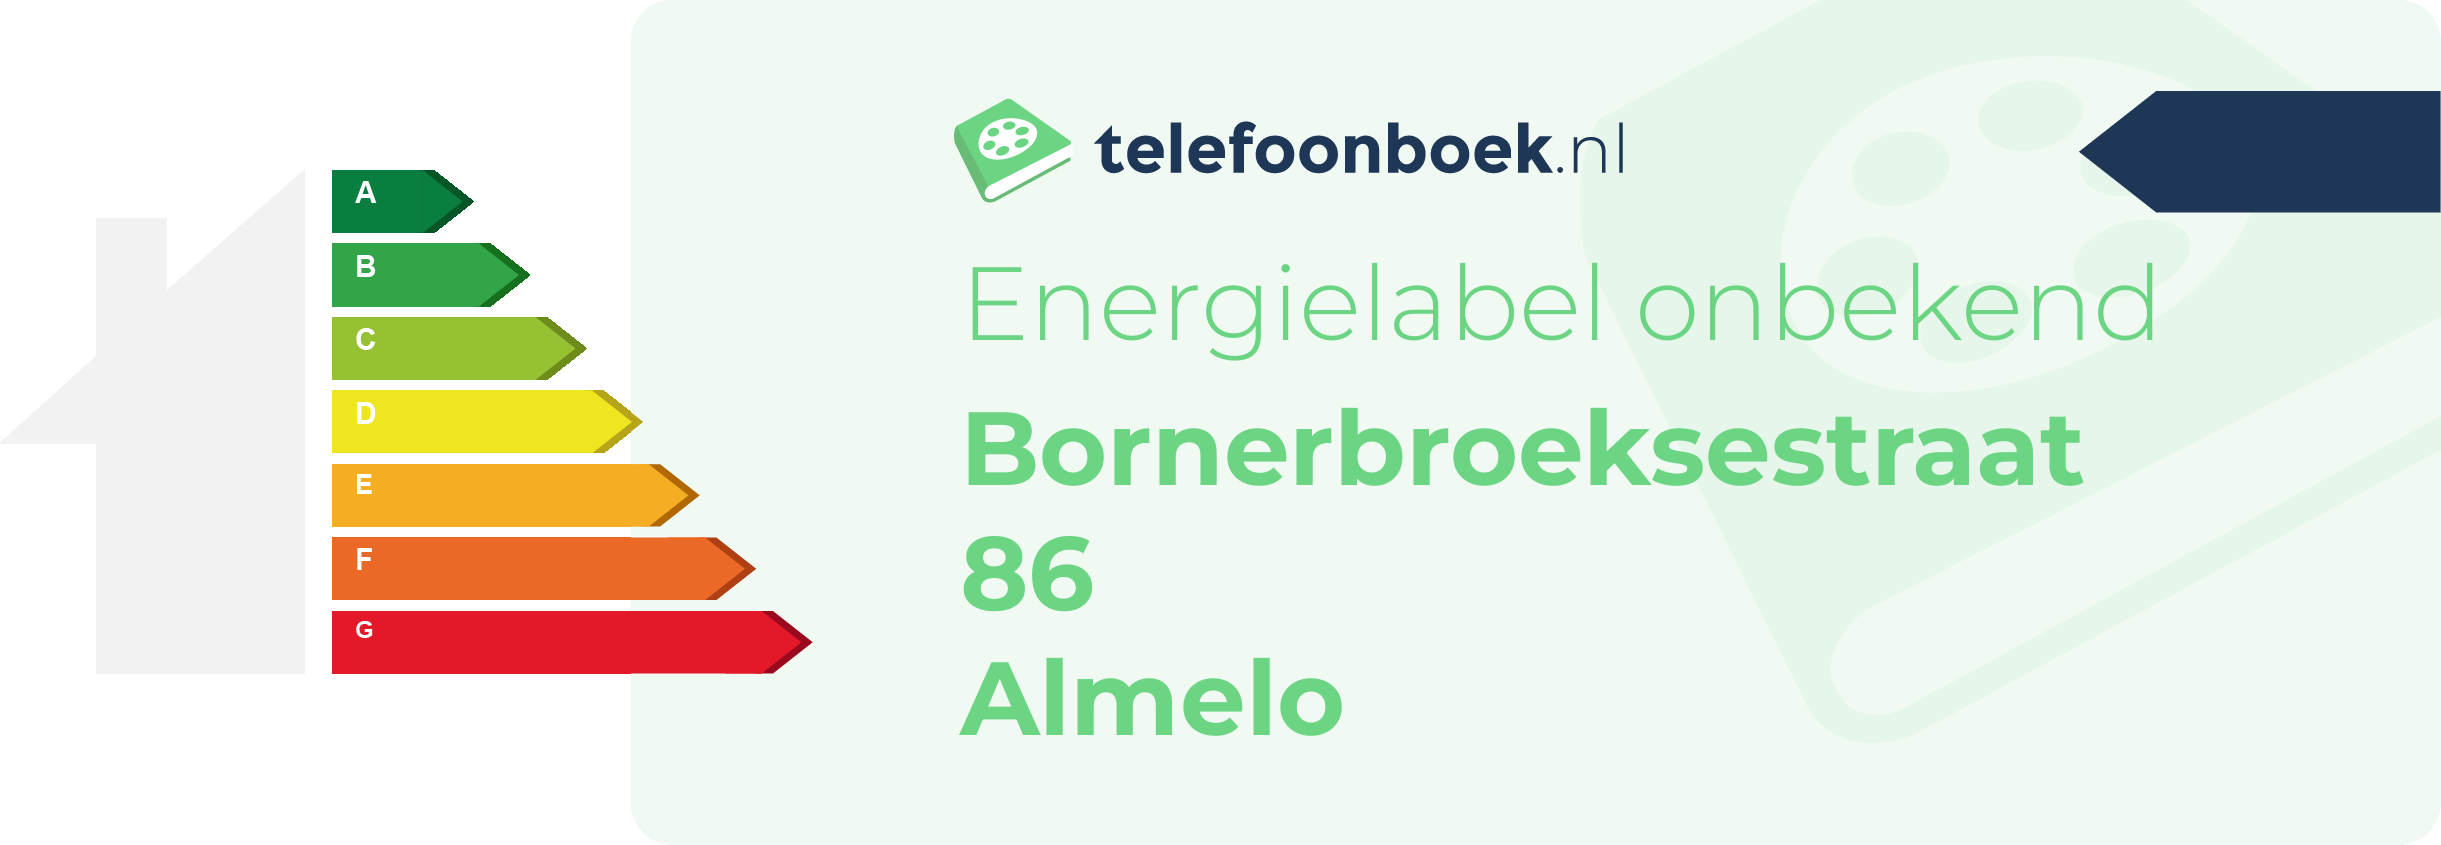 Energielabel Bornerbroeksestraat 86 Almelo